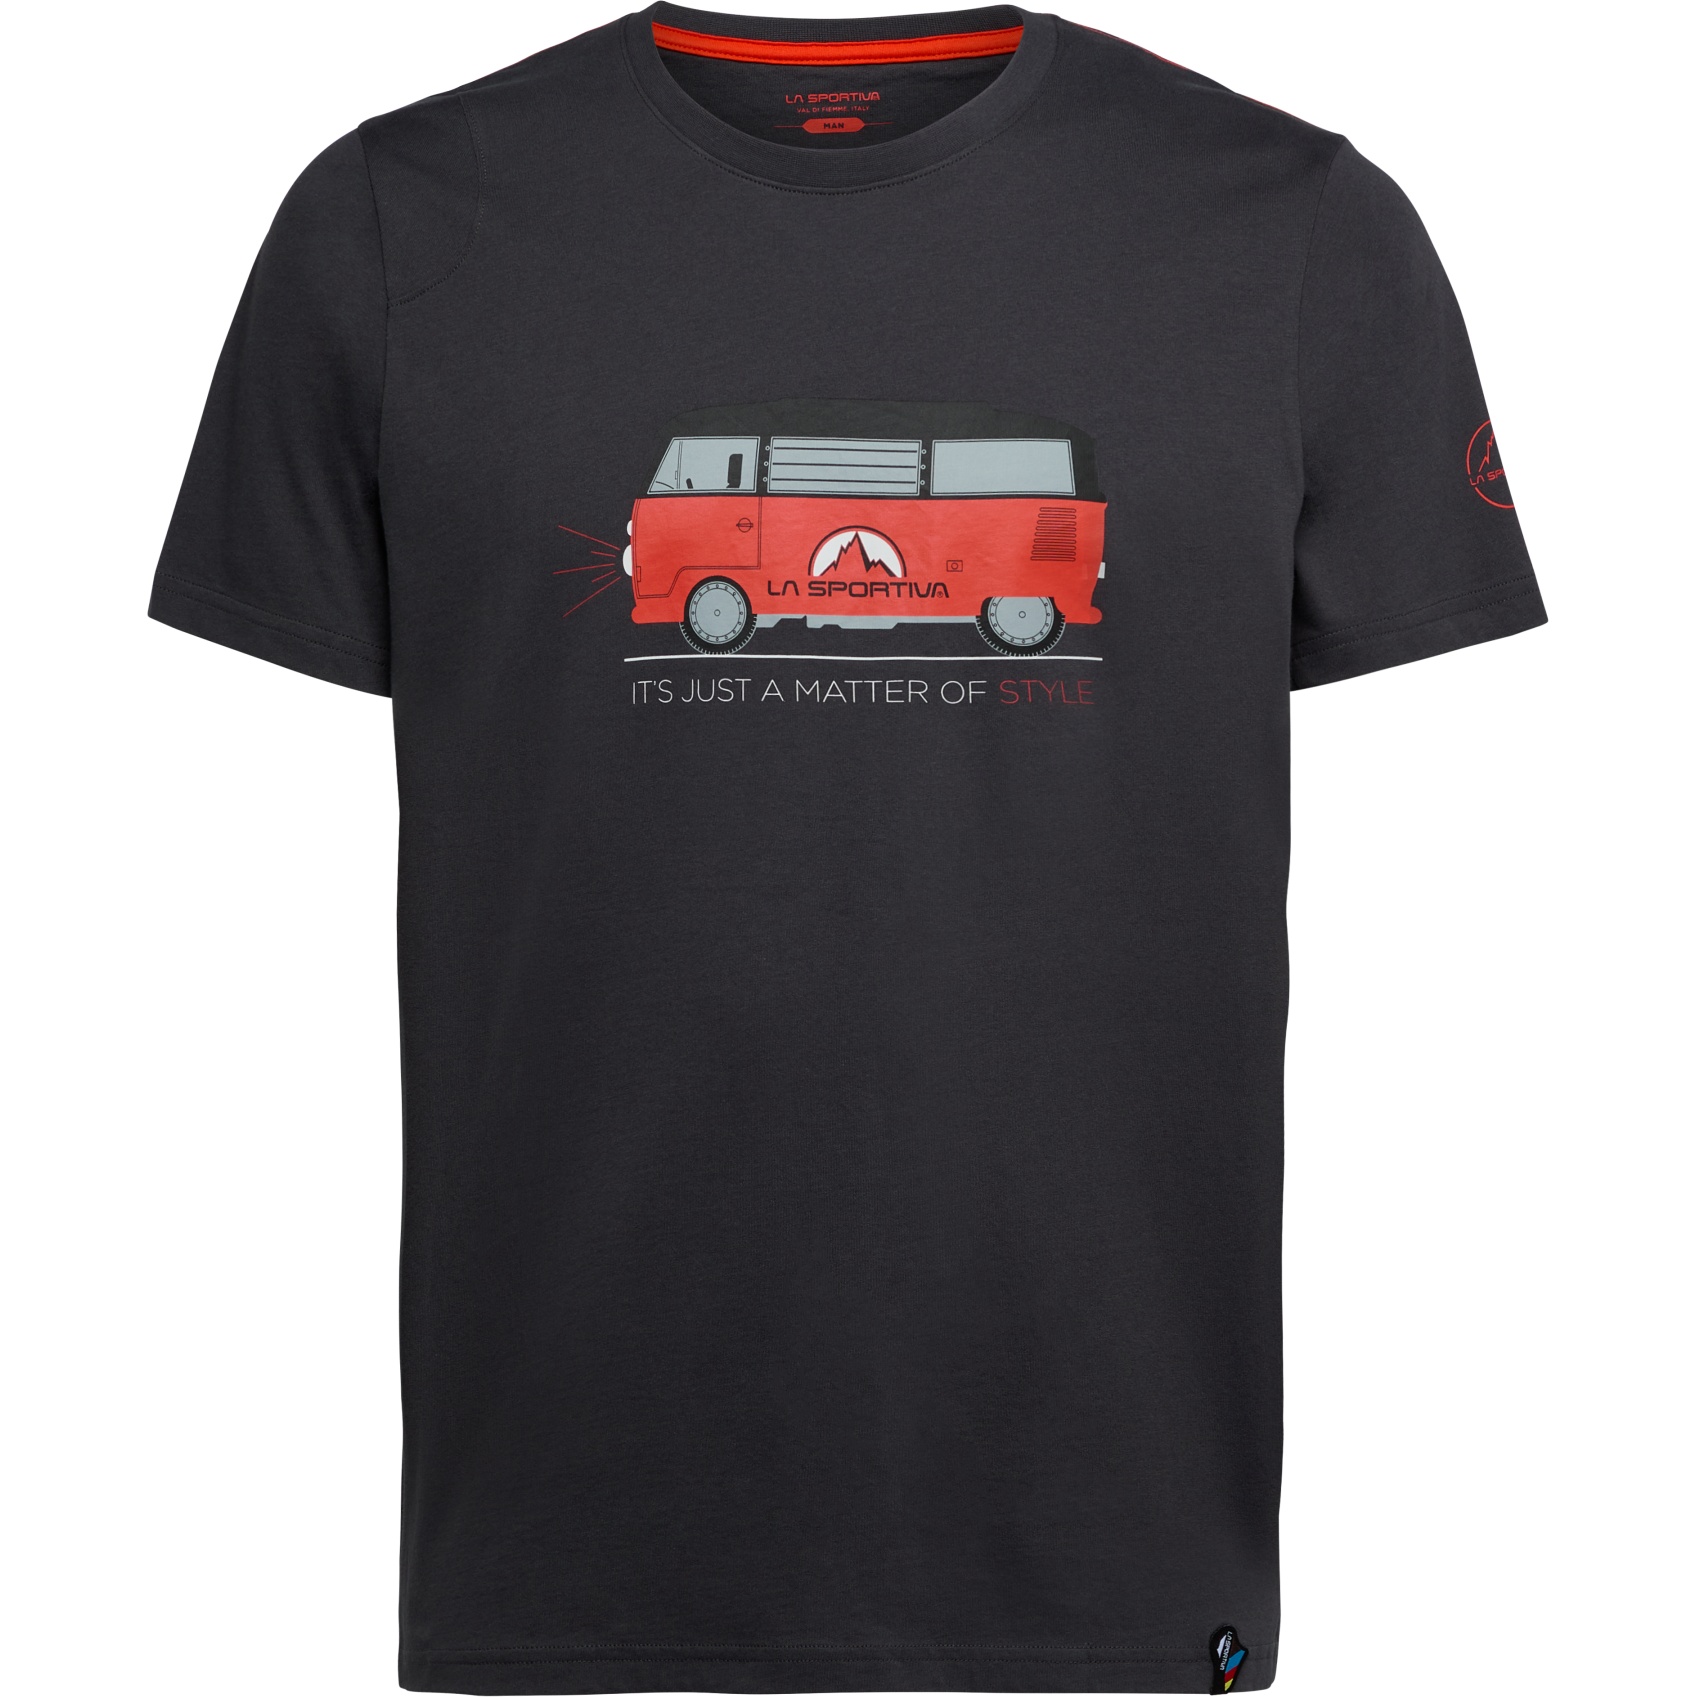 Productfoto van La Sportiva Van T-Shirt Heren - Carbon/Cherry Tomato